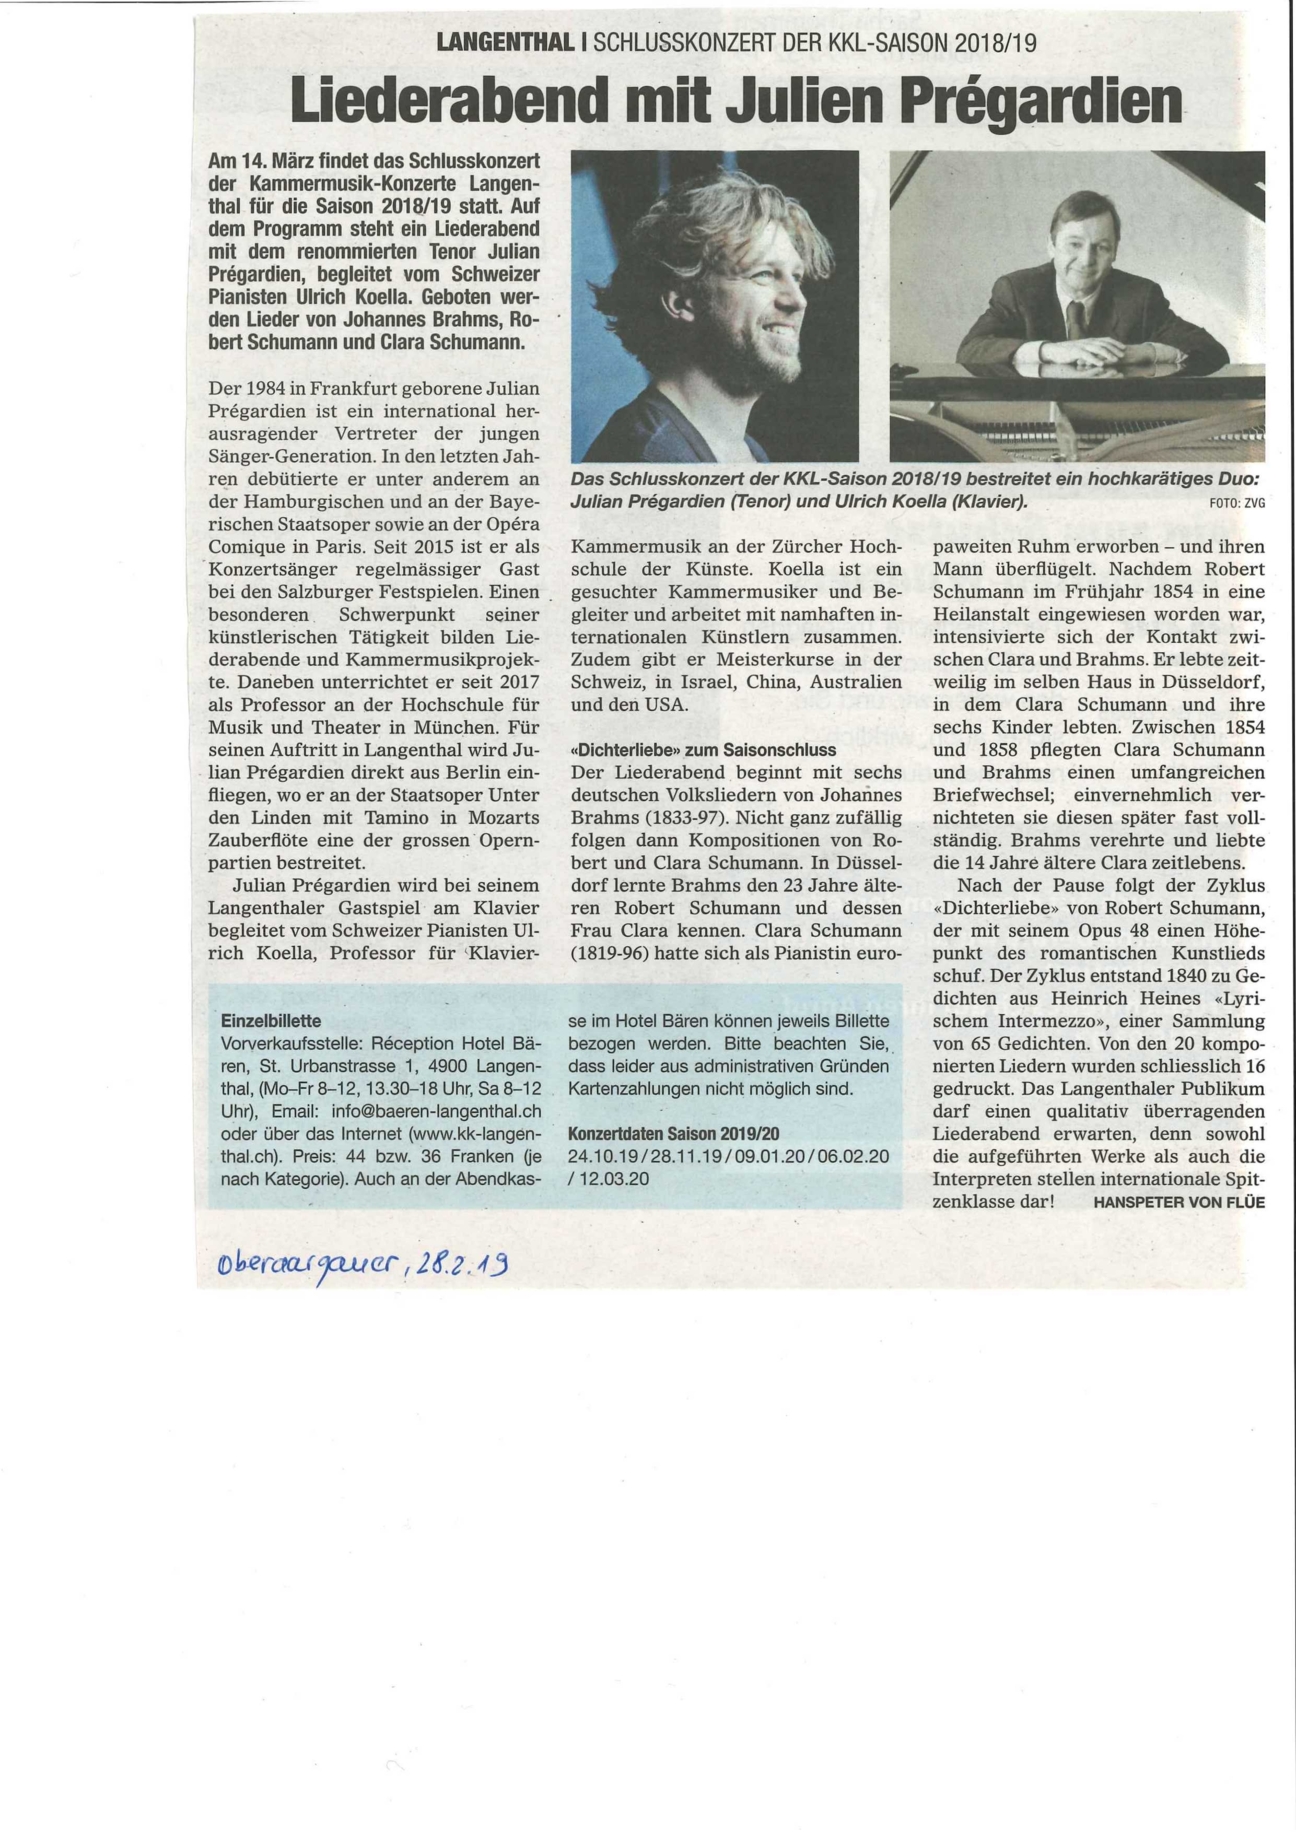 Artikel Oberaargauer Zeitung